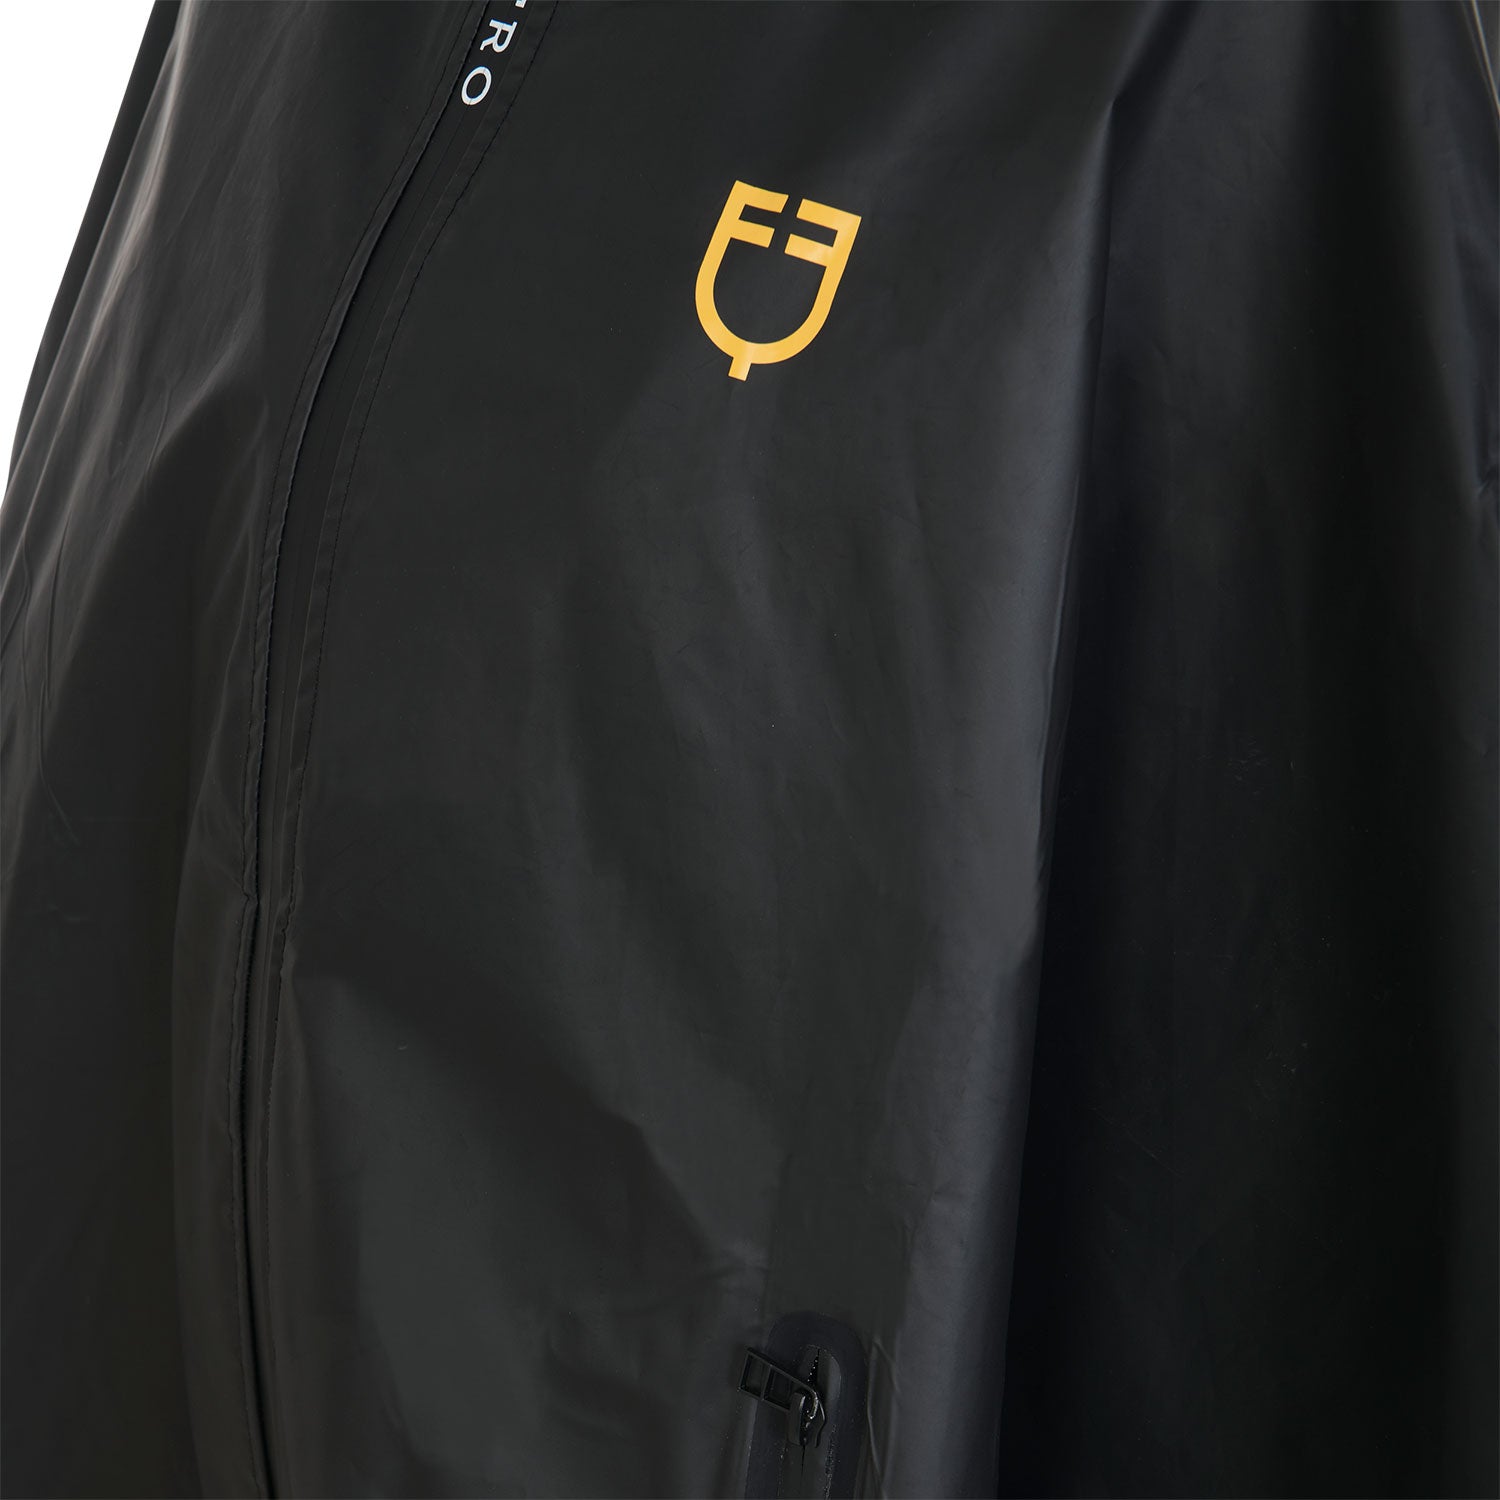 Women's raincoat poncho - Unisize / Black